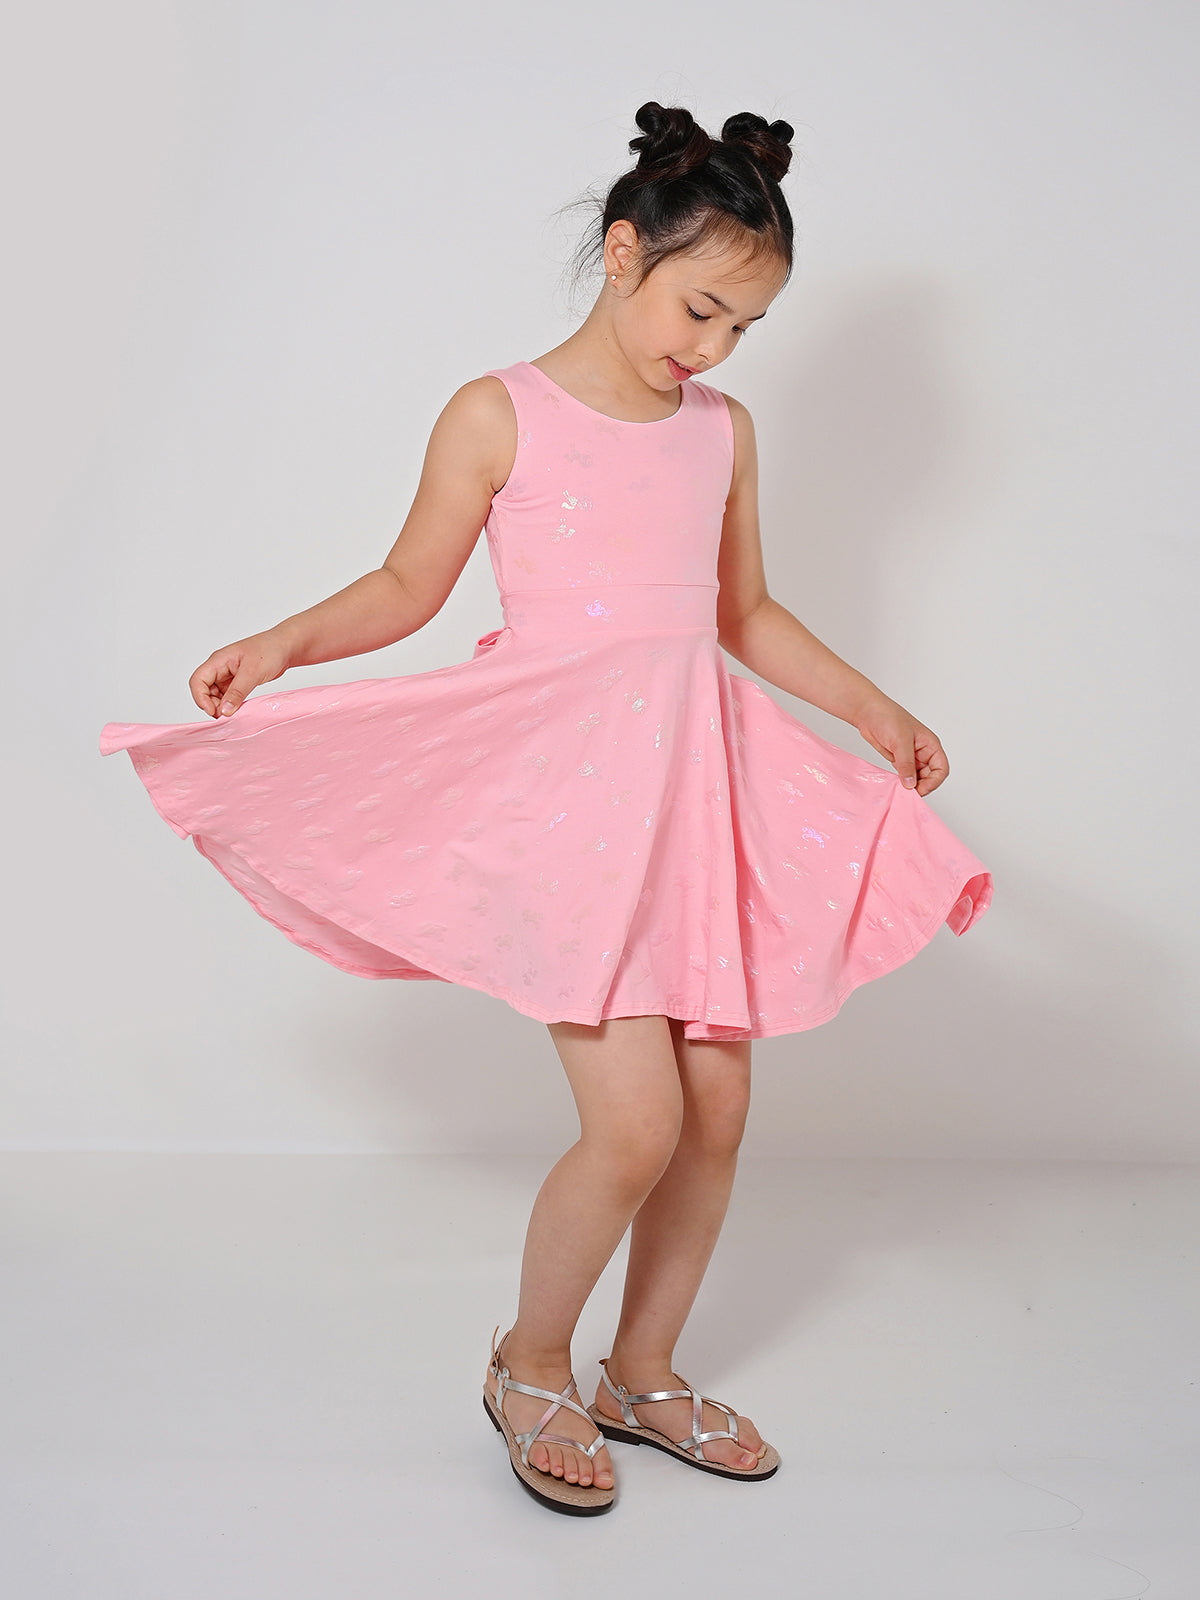 שמלת חדי קרן ורודה / ילדות- Almonet|עלמונת